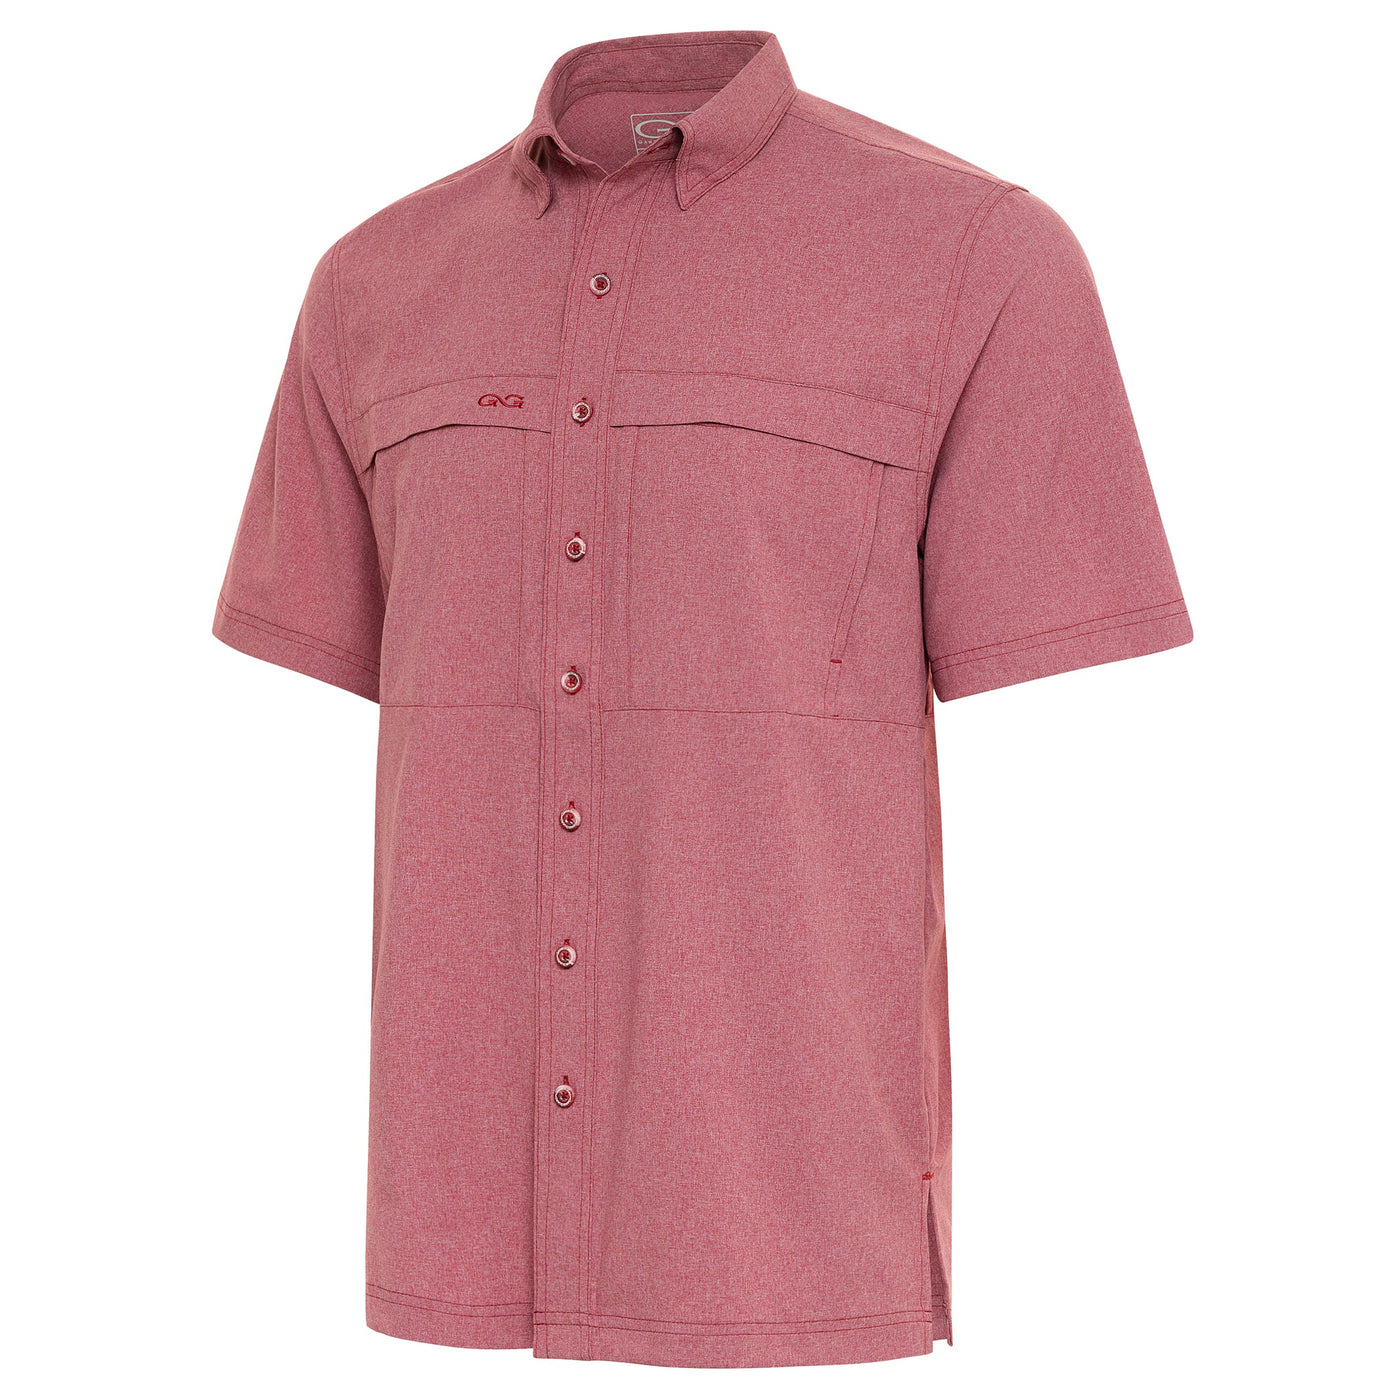 GameGuard Crimson MicroTek Shirt